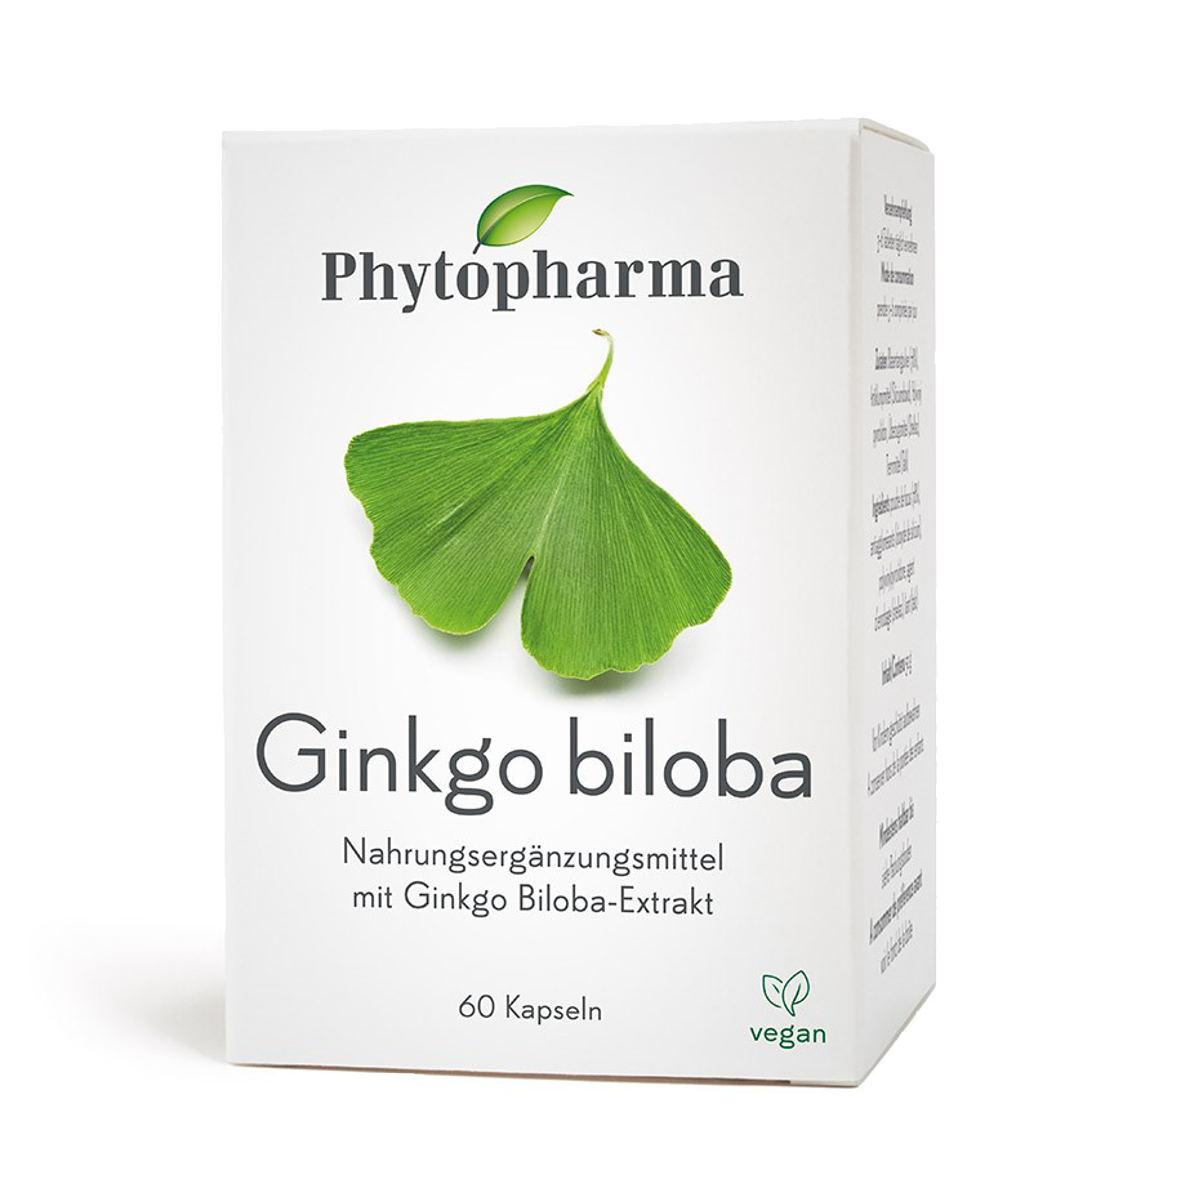 Phytopharma Ginkgo biloba - die natürliche Kraftquelle für geistige Vitalität.